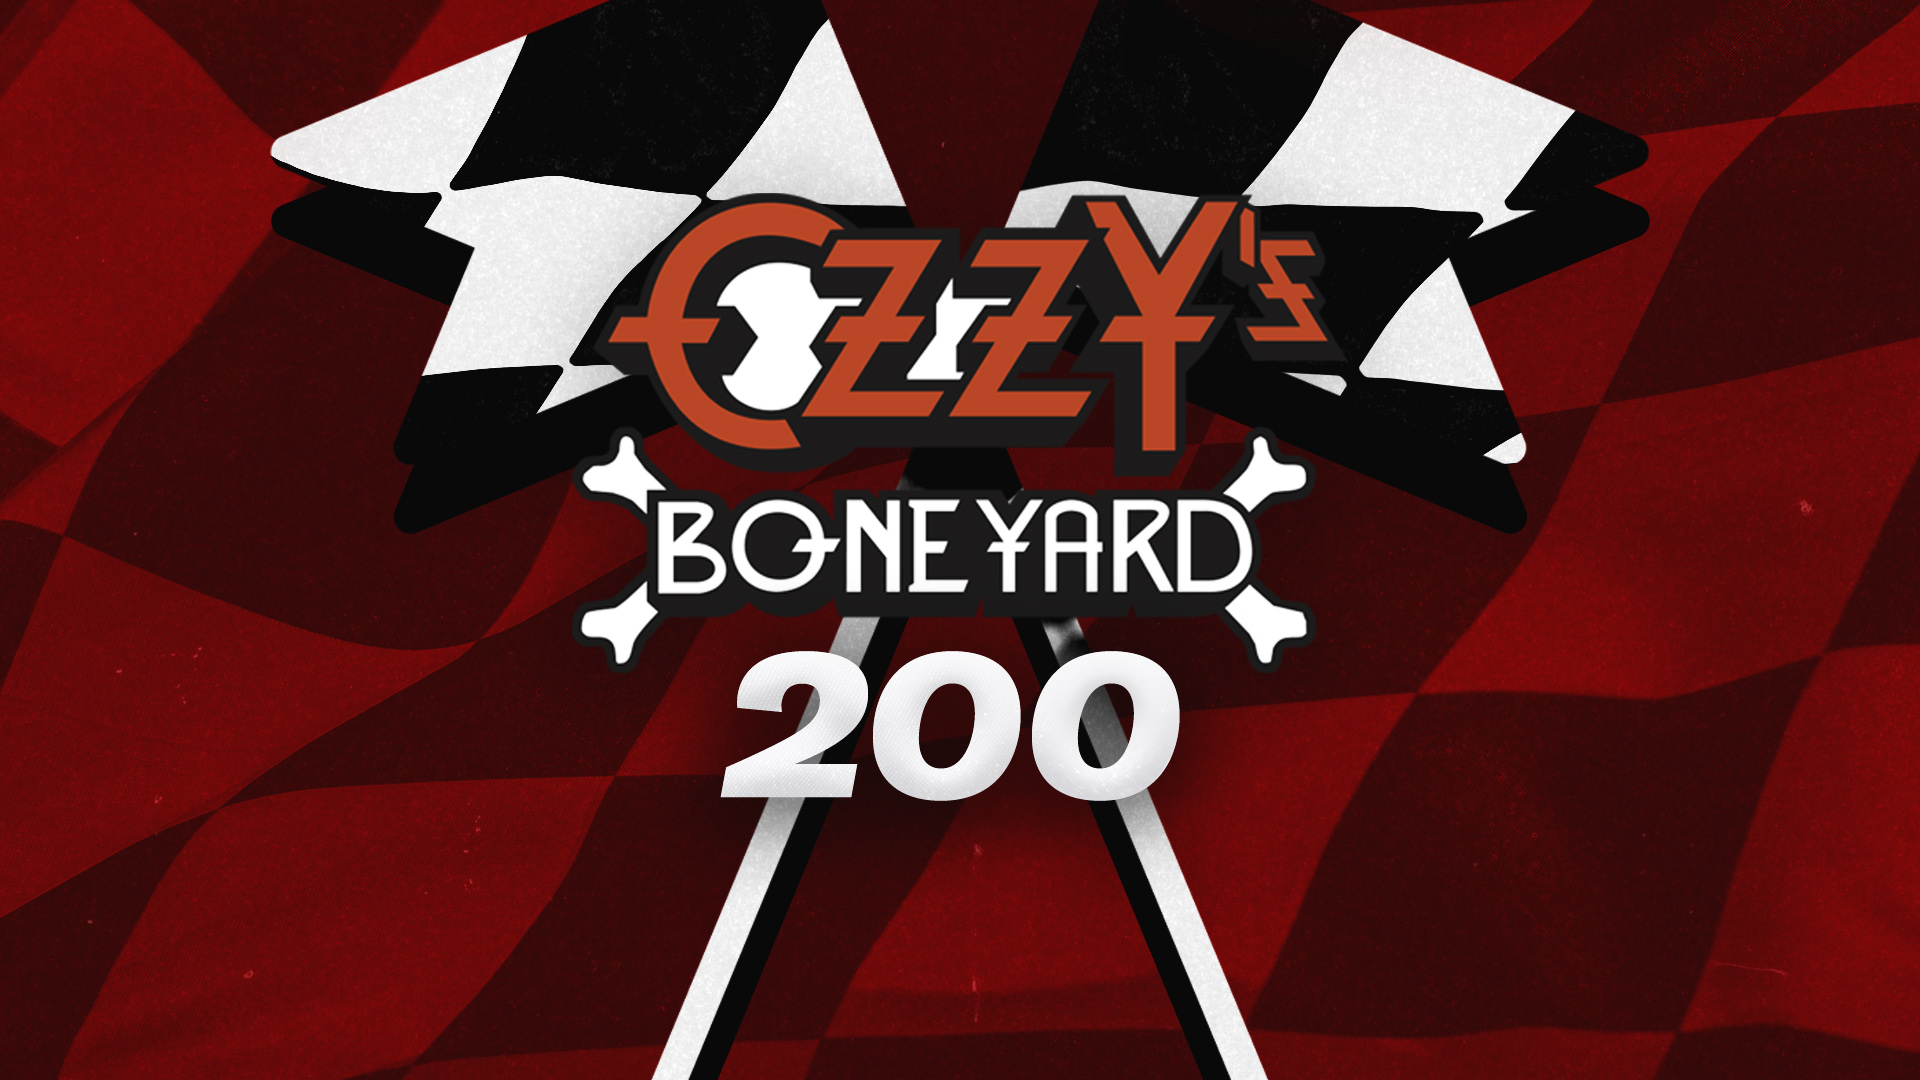 SiriusXM Ozzy's Boneyard 200